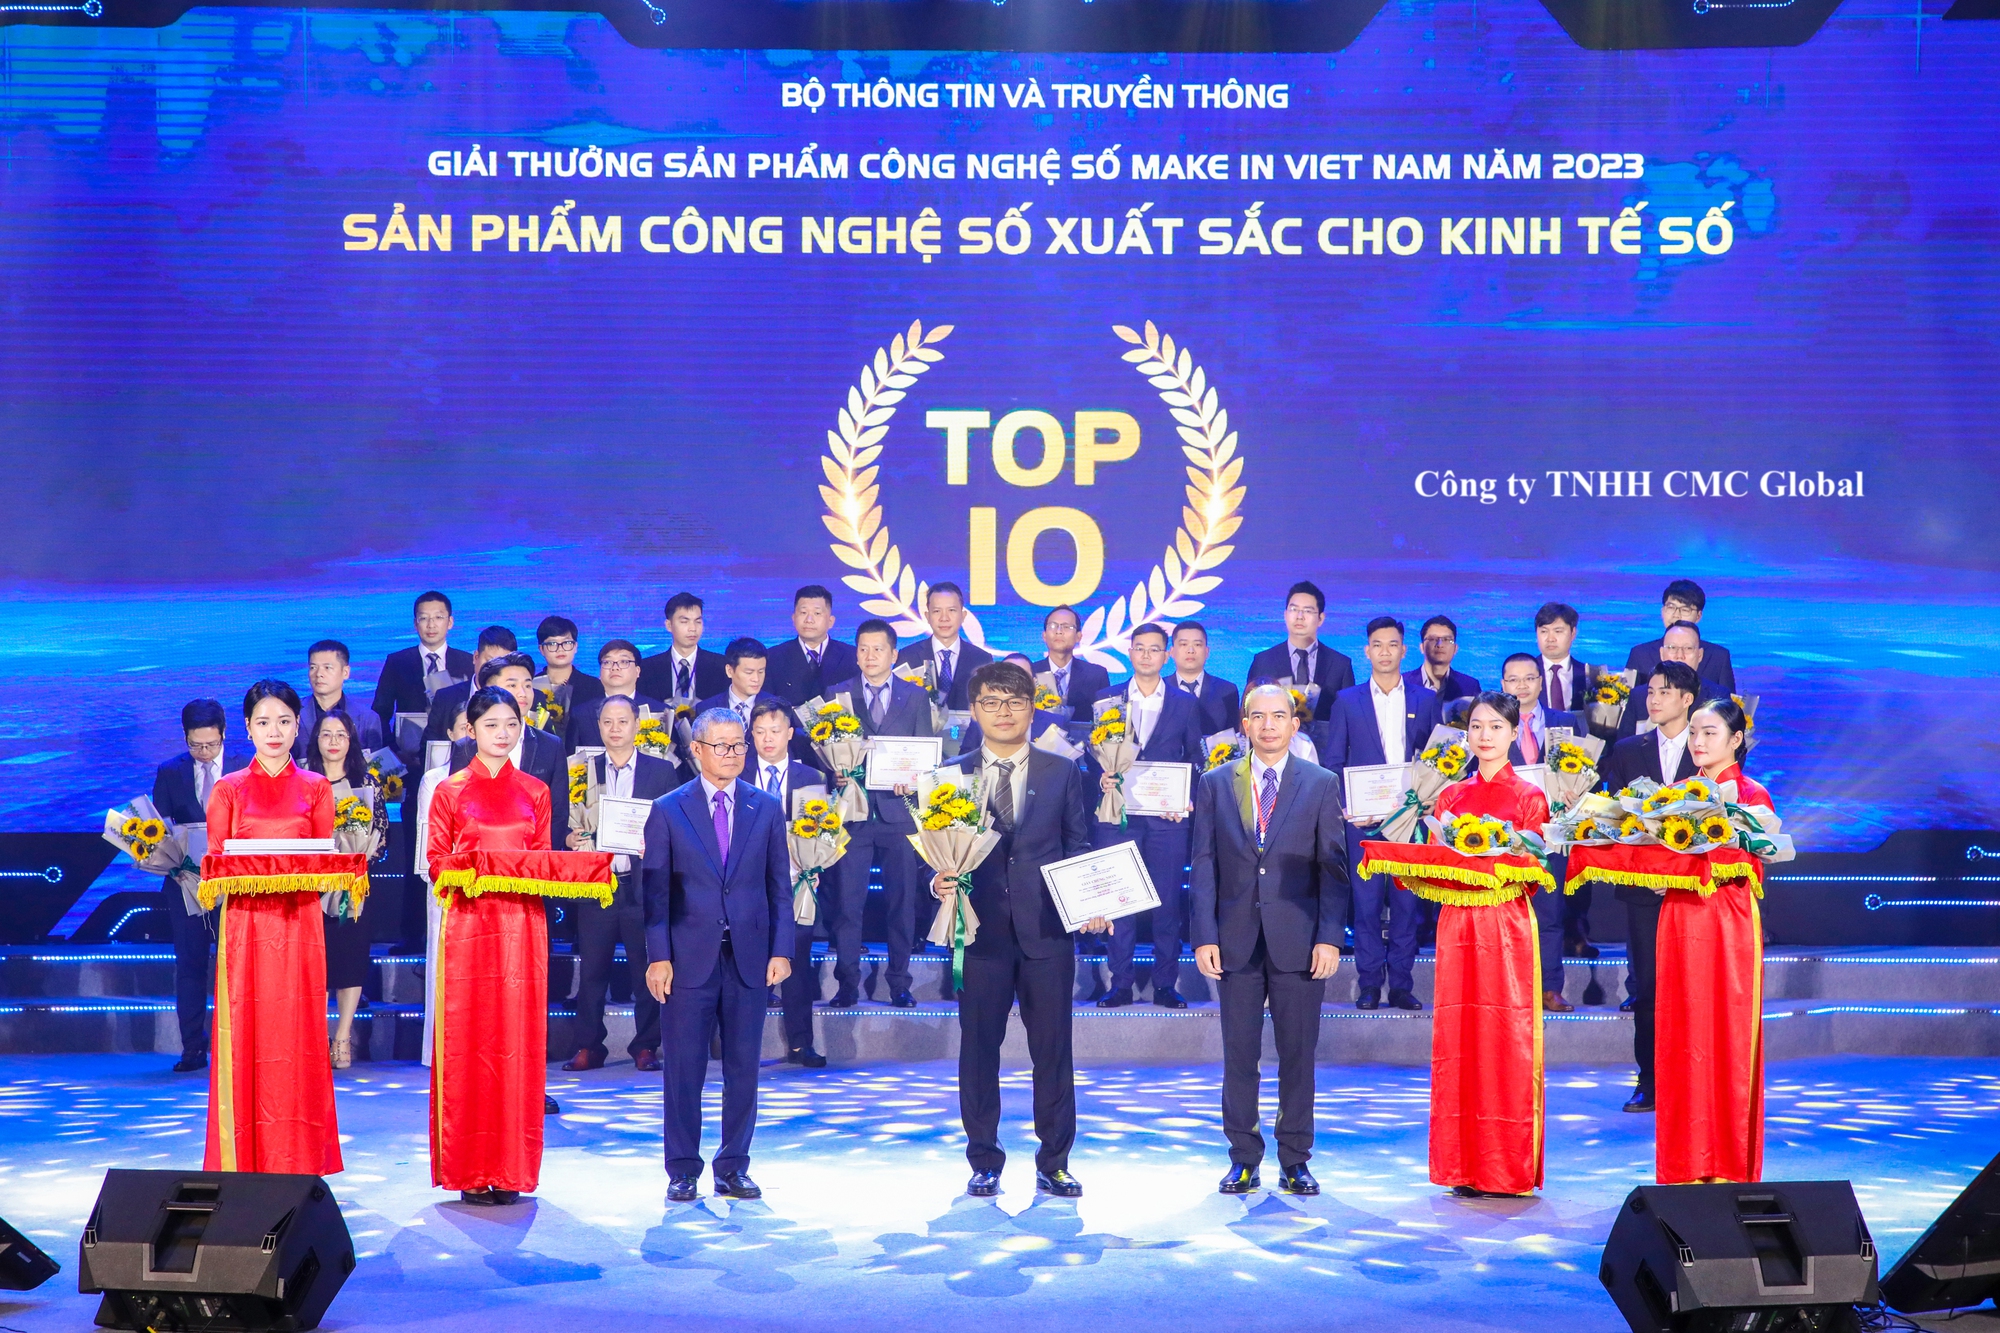 CMC Cloud giành giải Bạc sản phẩm Make in Viet Nam 2023 xuất sắc cho Kinh tế số